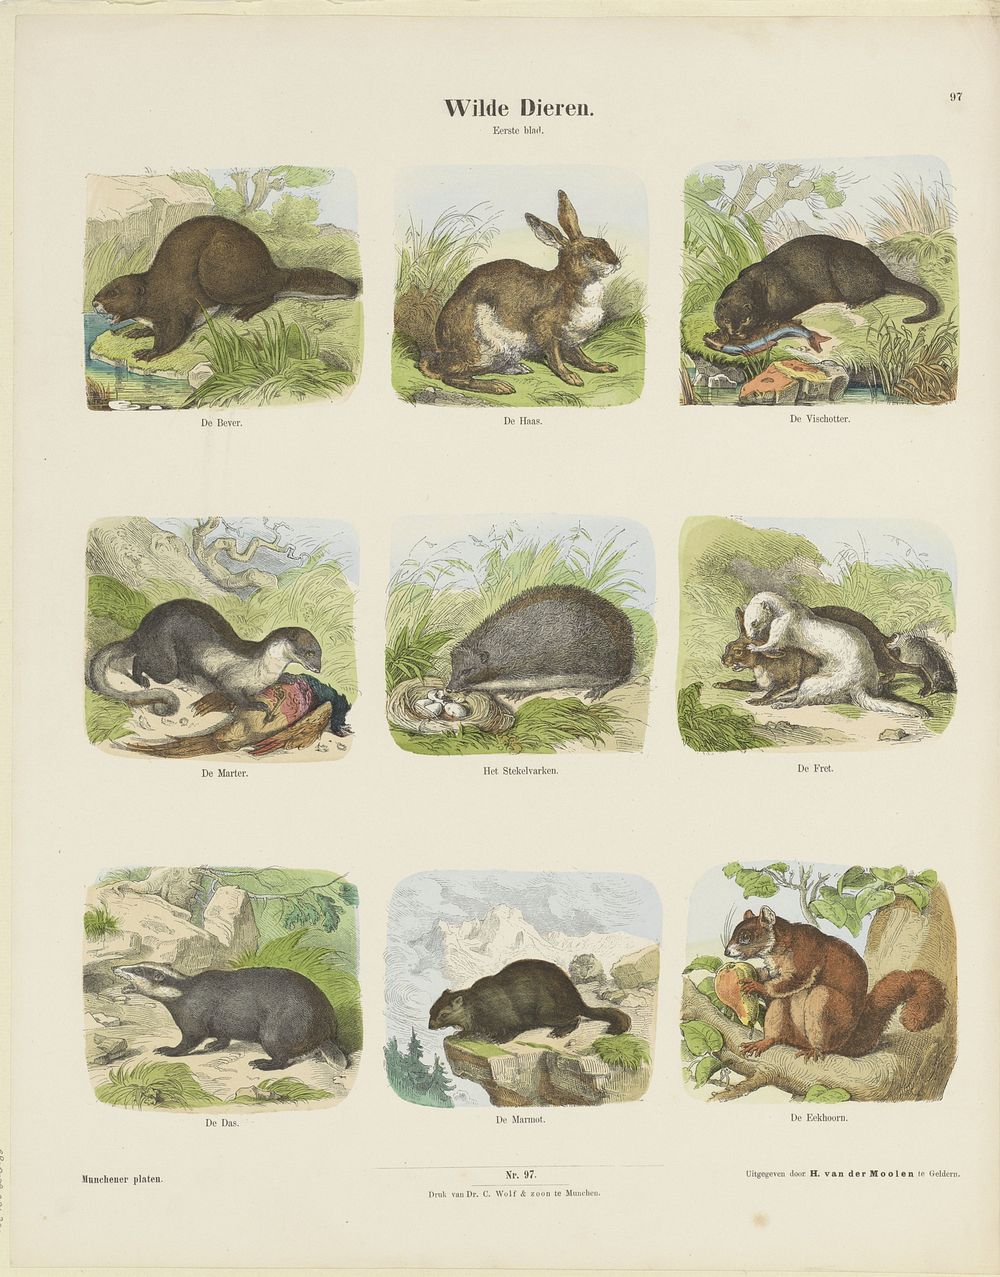 Wilde dieren (c. 1820 - 1843) by Hermann van der Moolen, K Braun en Fr Schneider, dr C Wolf and Sohn and anonymous